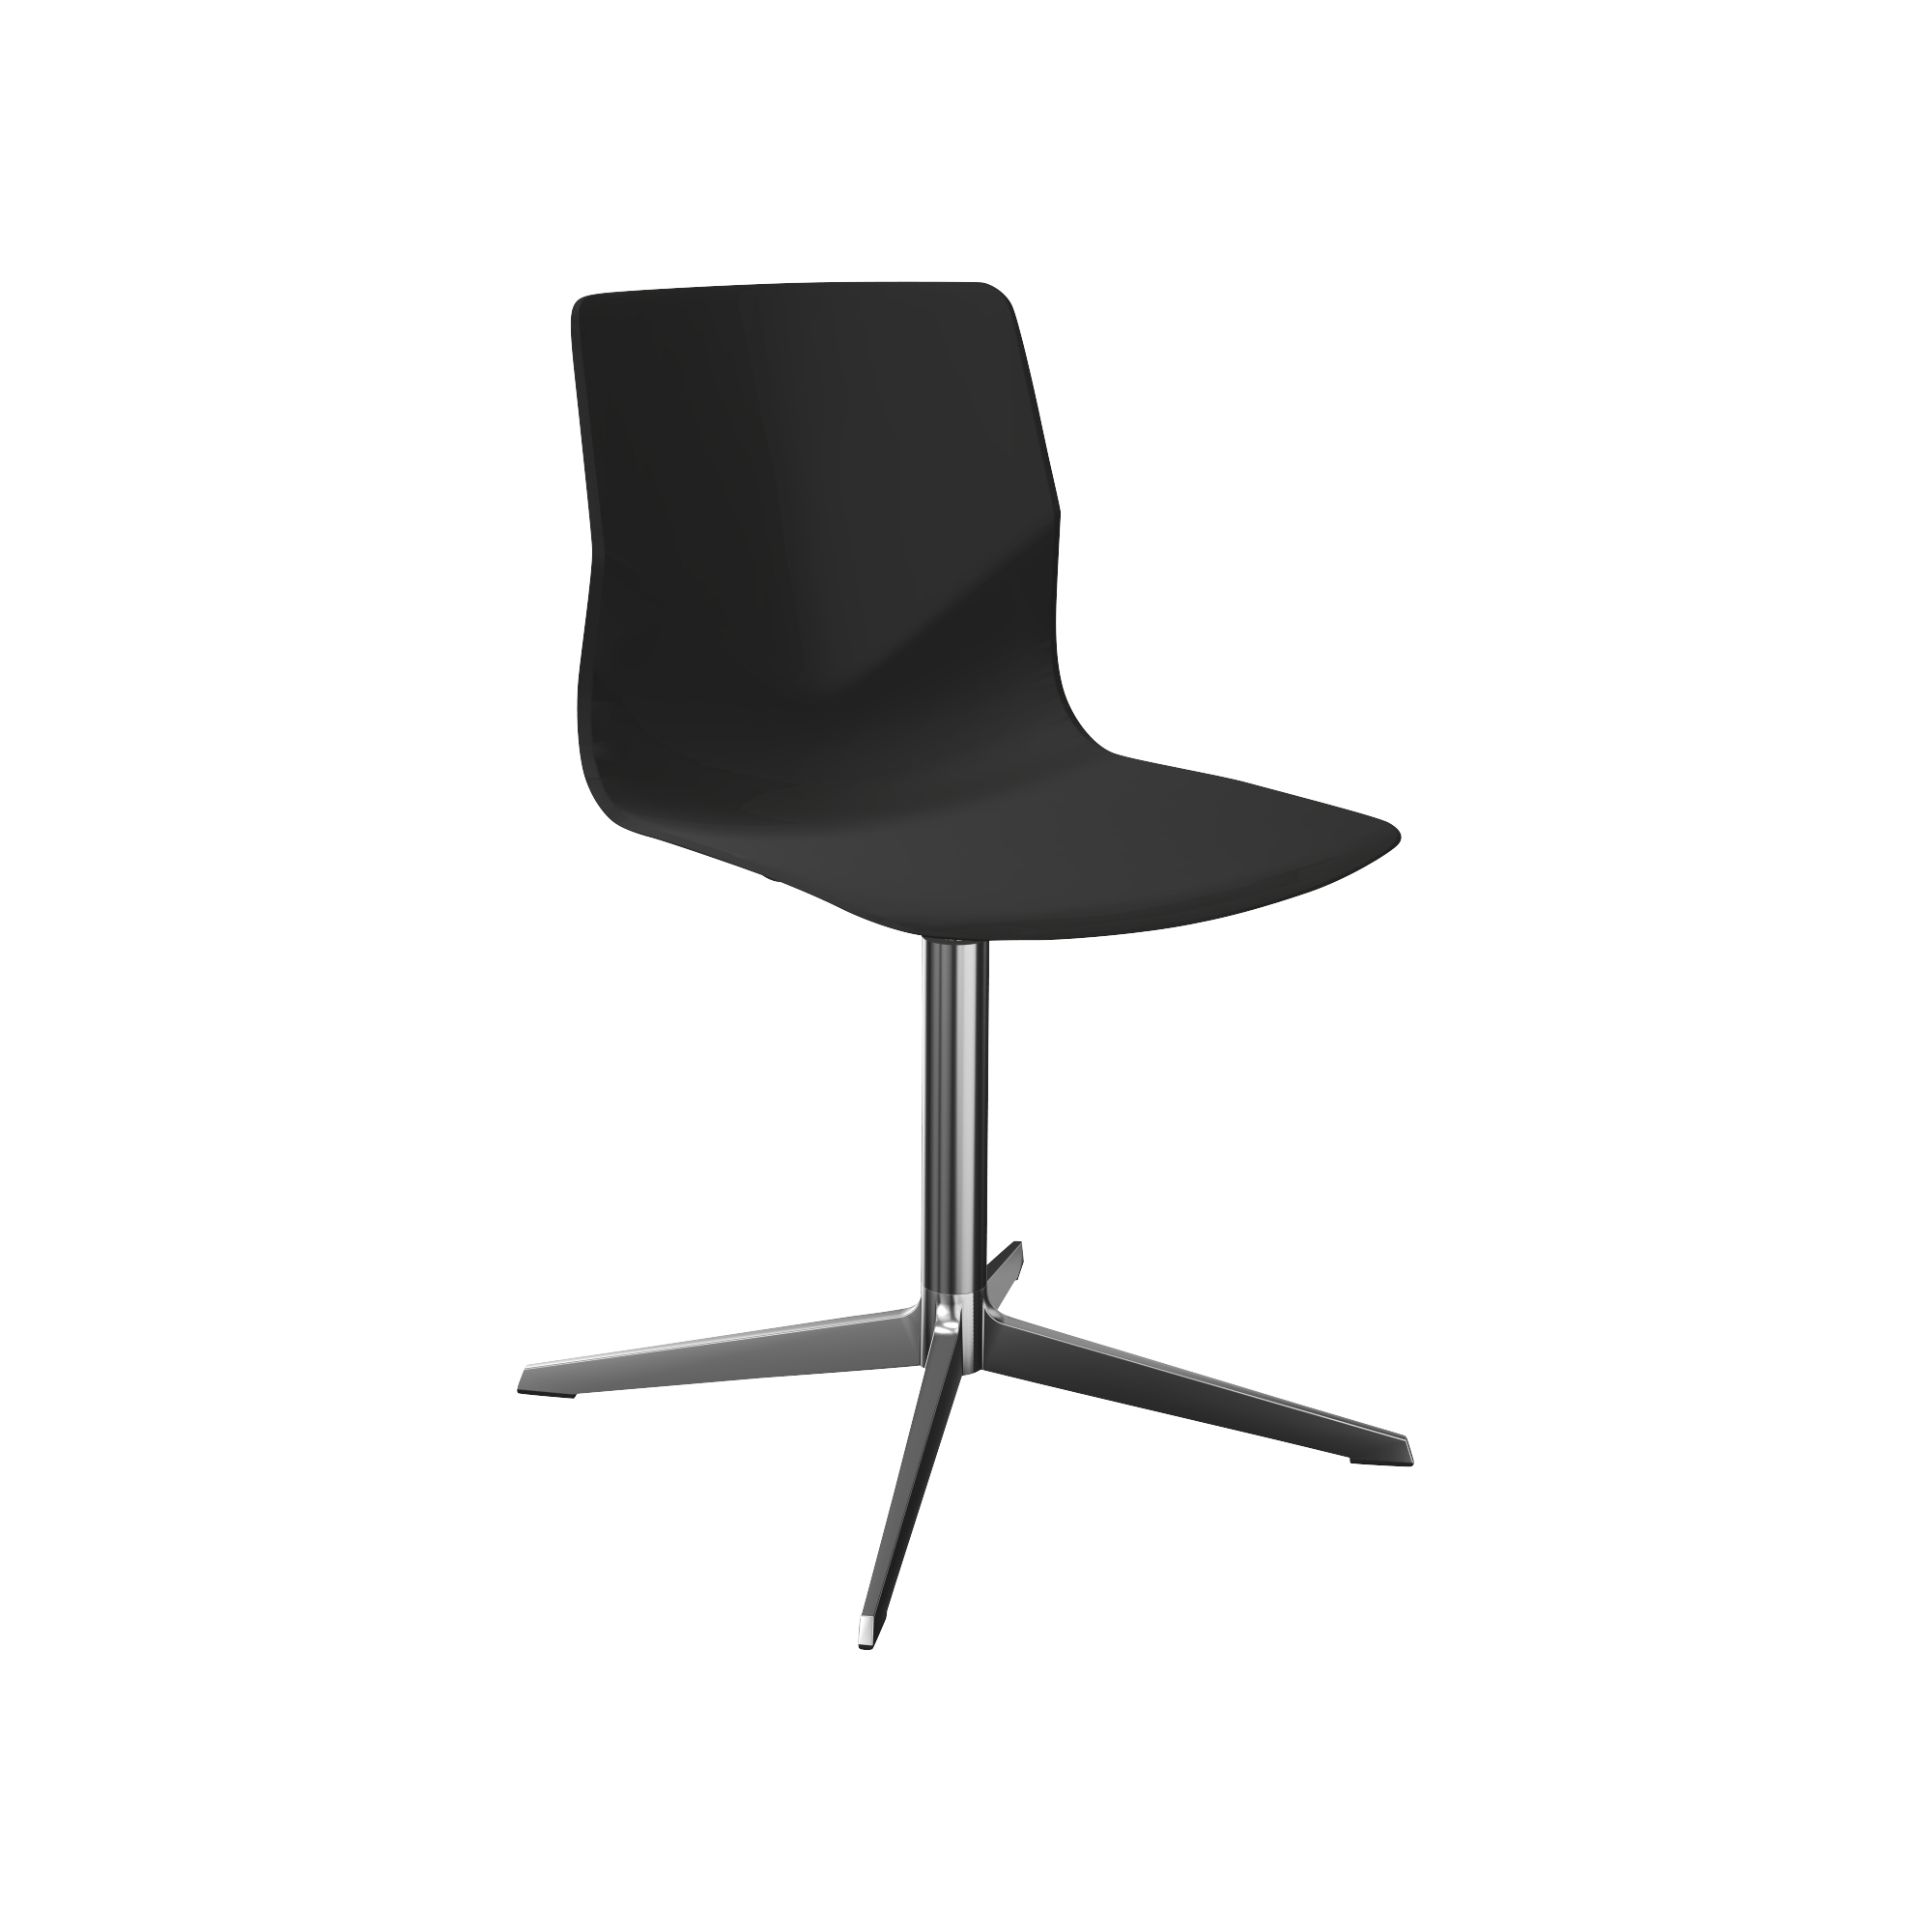 A black office chair with a chrome pedestal leg